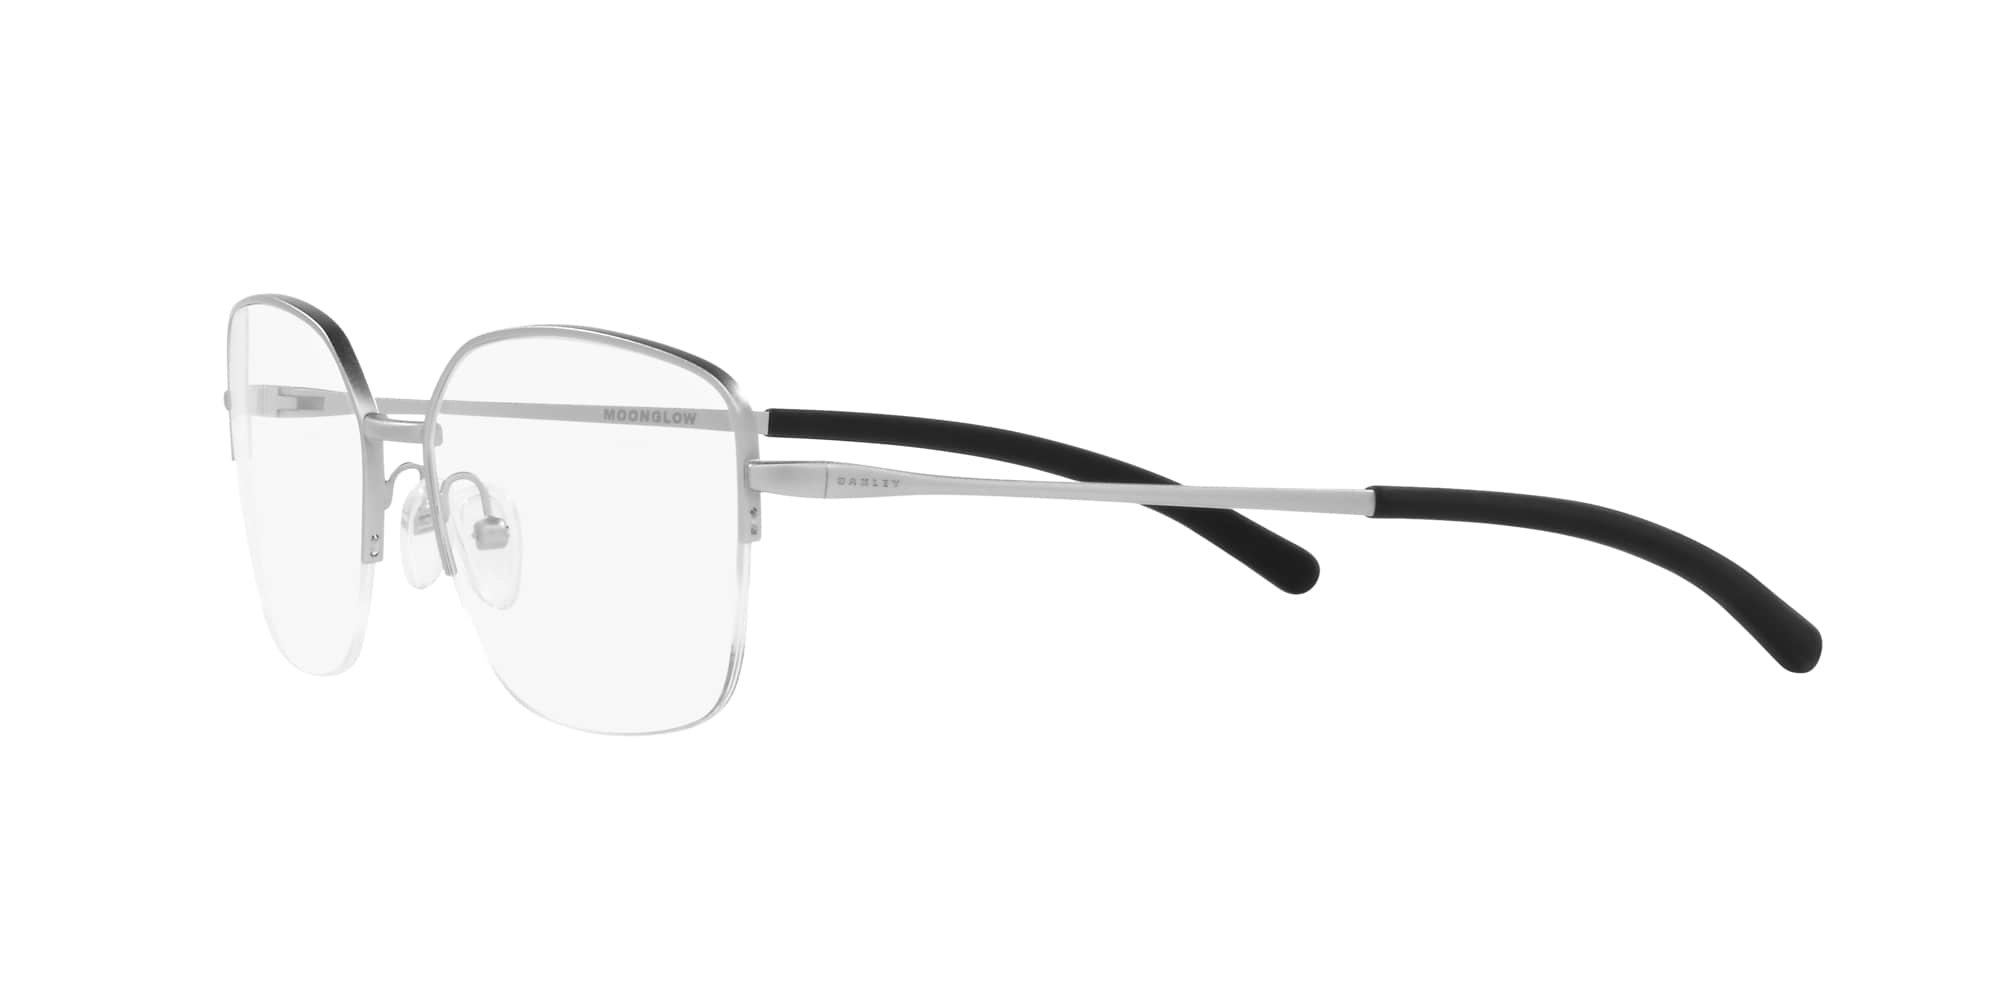 Das Bild zeigt die Korrektionsbrille OX3006 300604 von der Marke Oakley  in  chrom satiniert.